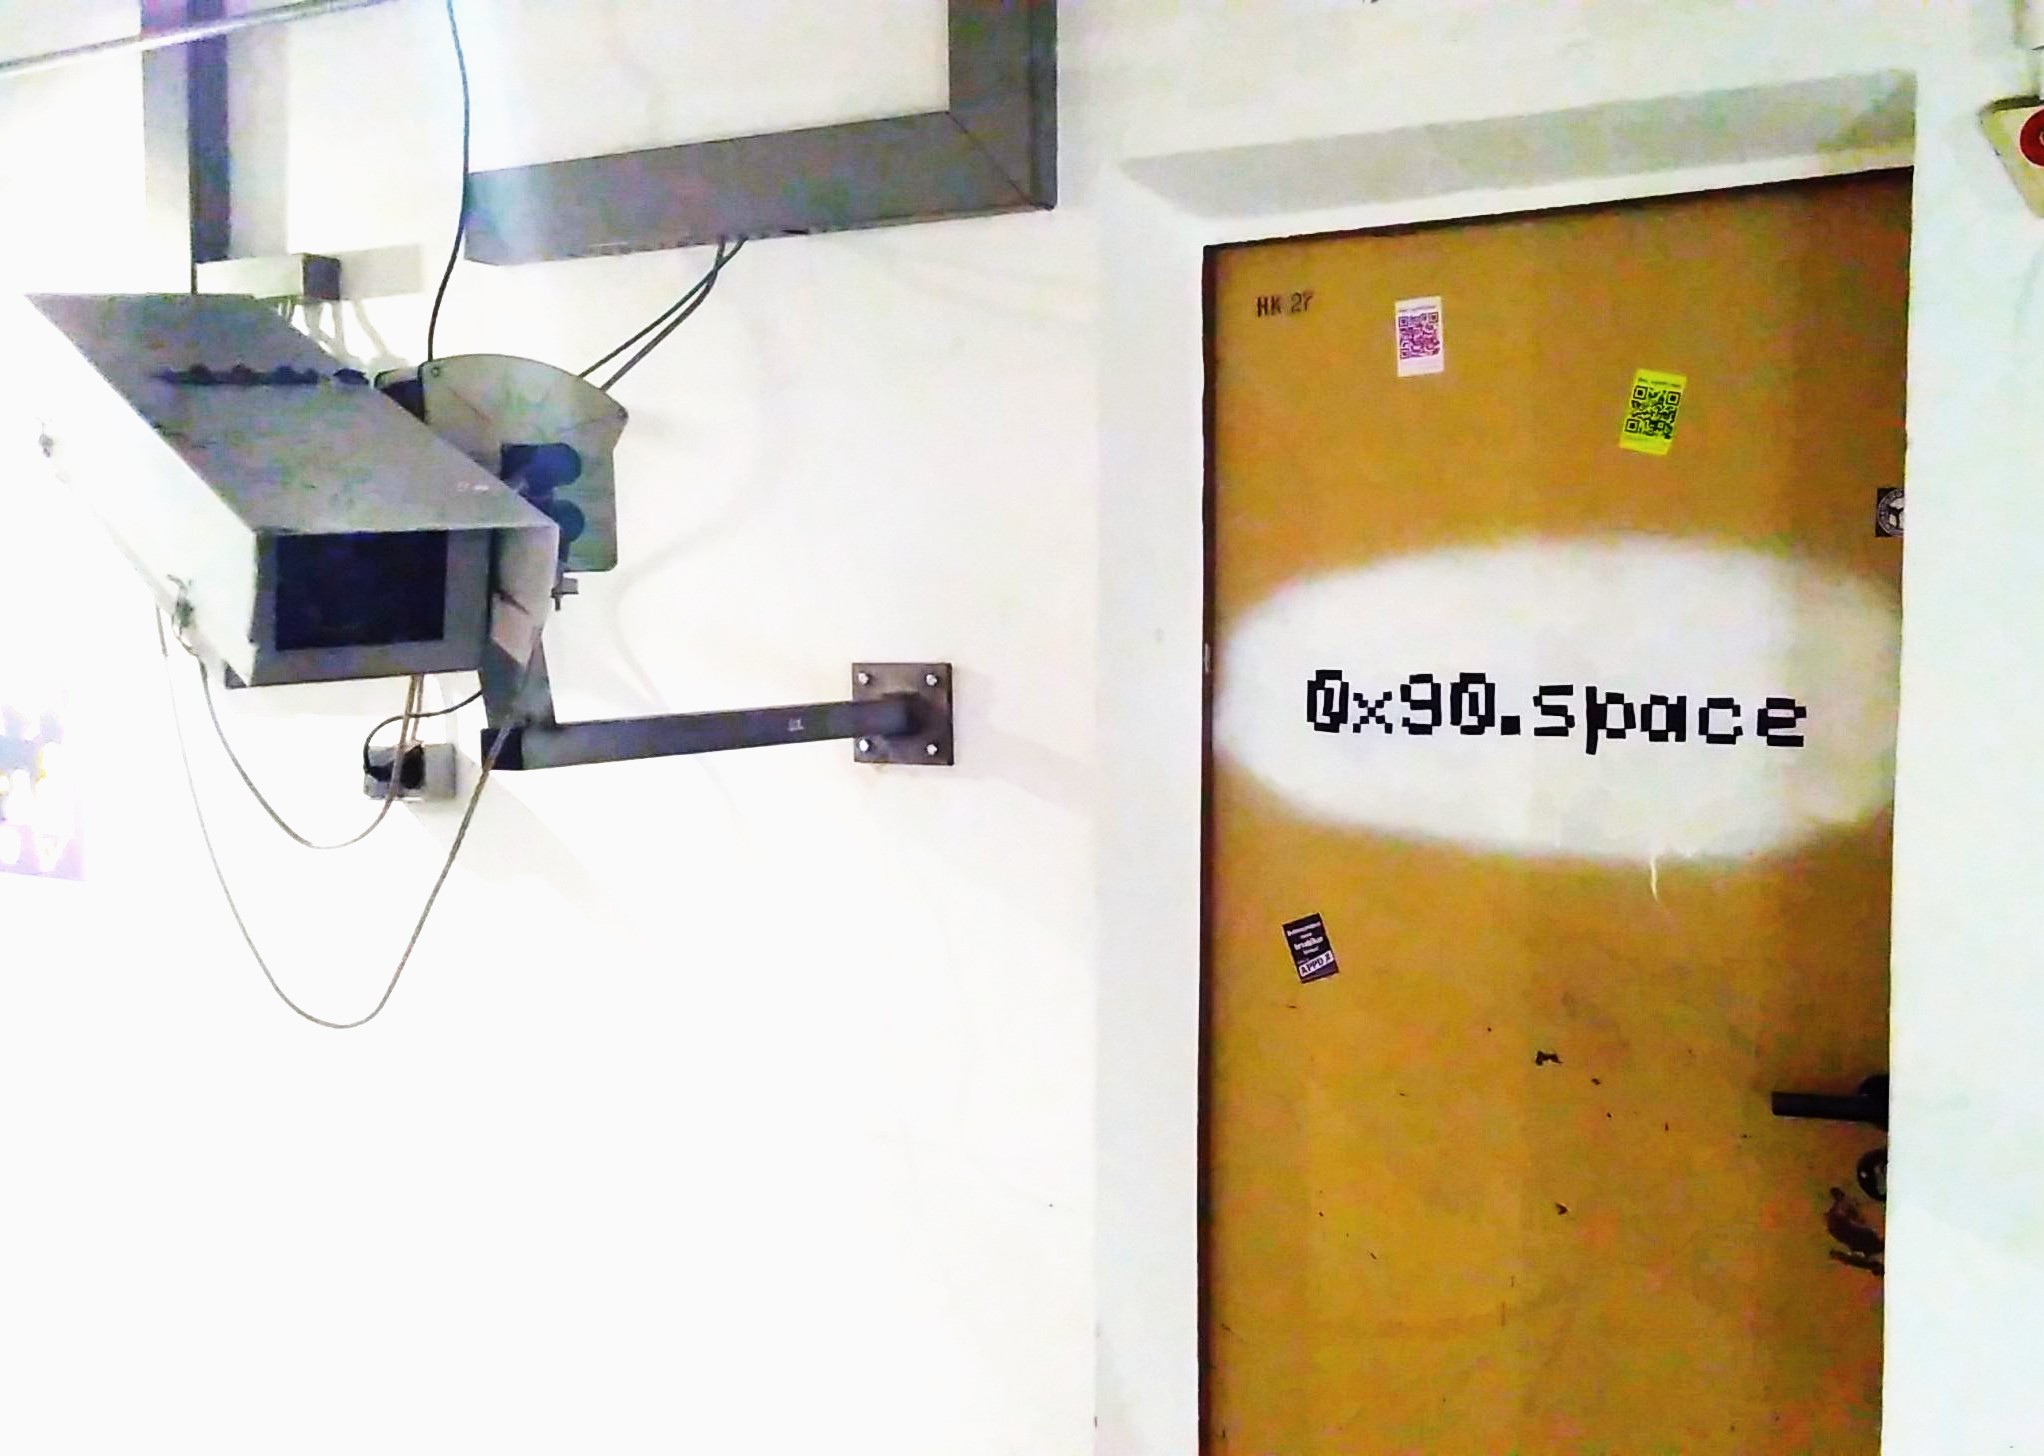 Eine Tür, an der mit schwarzer Schrift auf weißem Grund  0x90.space geschrieben ist. Links daneben ist eine überdimensionale Überwachungskamera zu sehen.